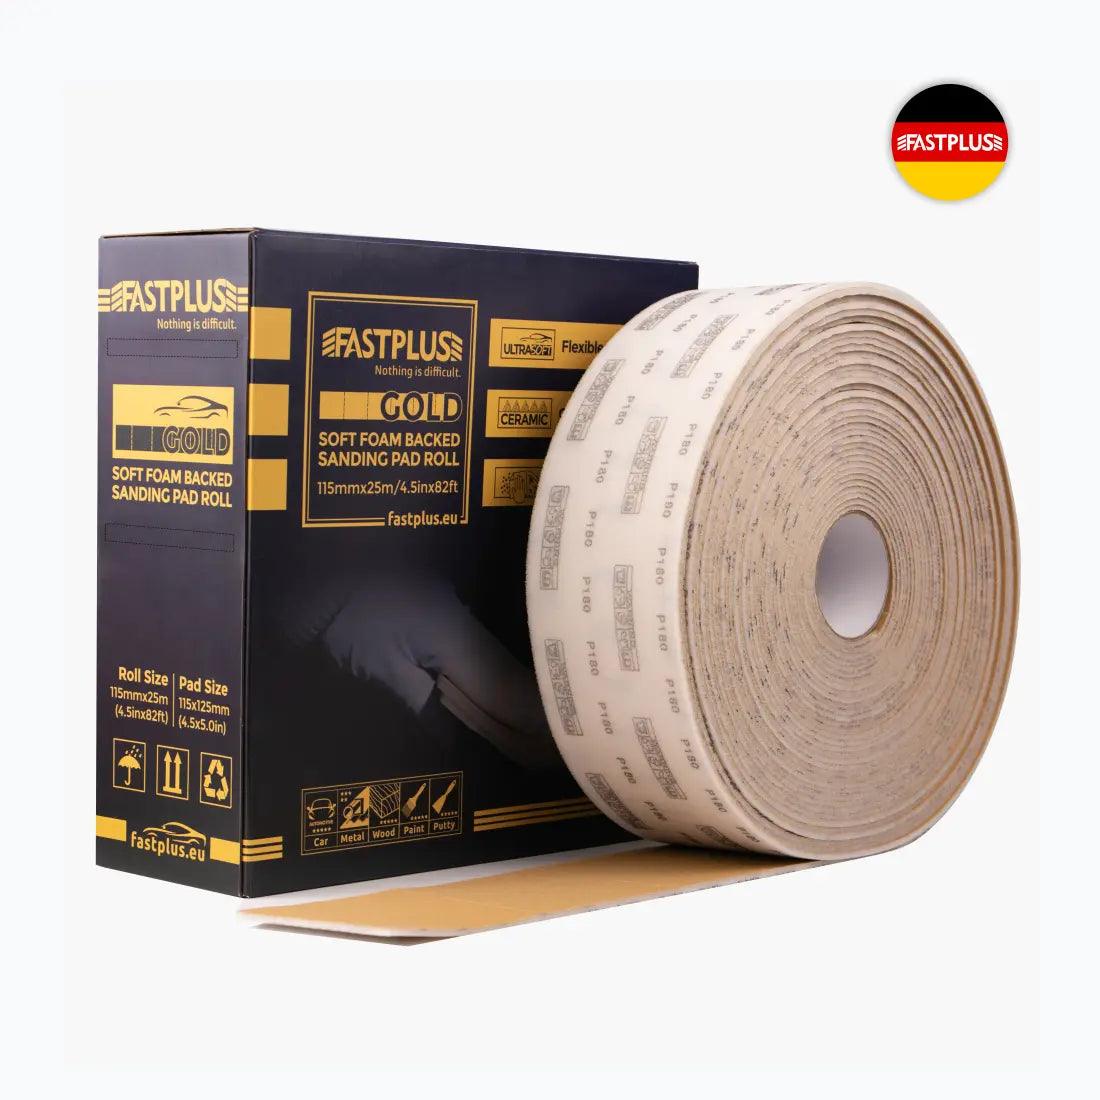 http://fastplus.eu/cdn/shop/files/FSR6-foam-sandpaper-pad-roll-115mmx25m-ceramic-Fastplus-Goldflex-Schaumstoff-Schleifpapier-Rollen-schleifpad.webp?v=1695808997